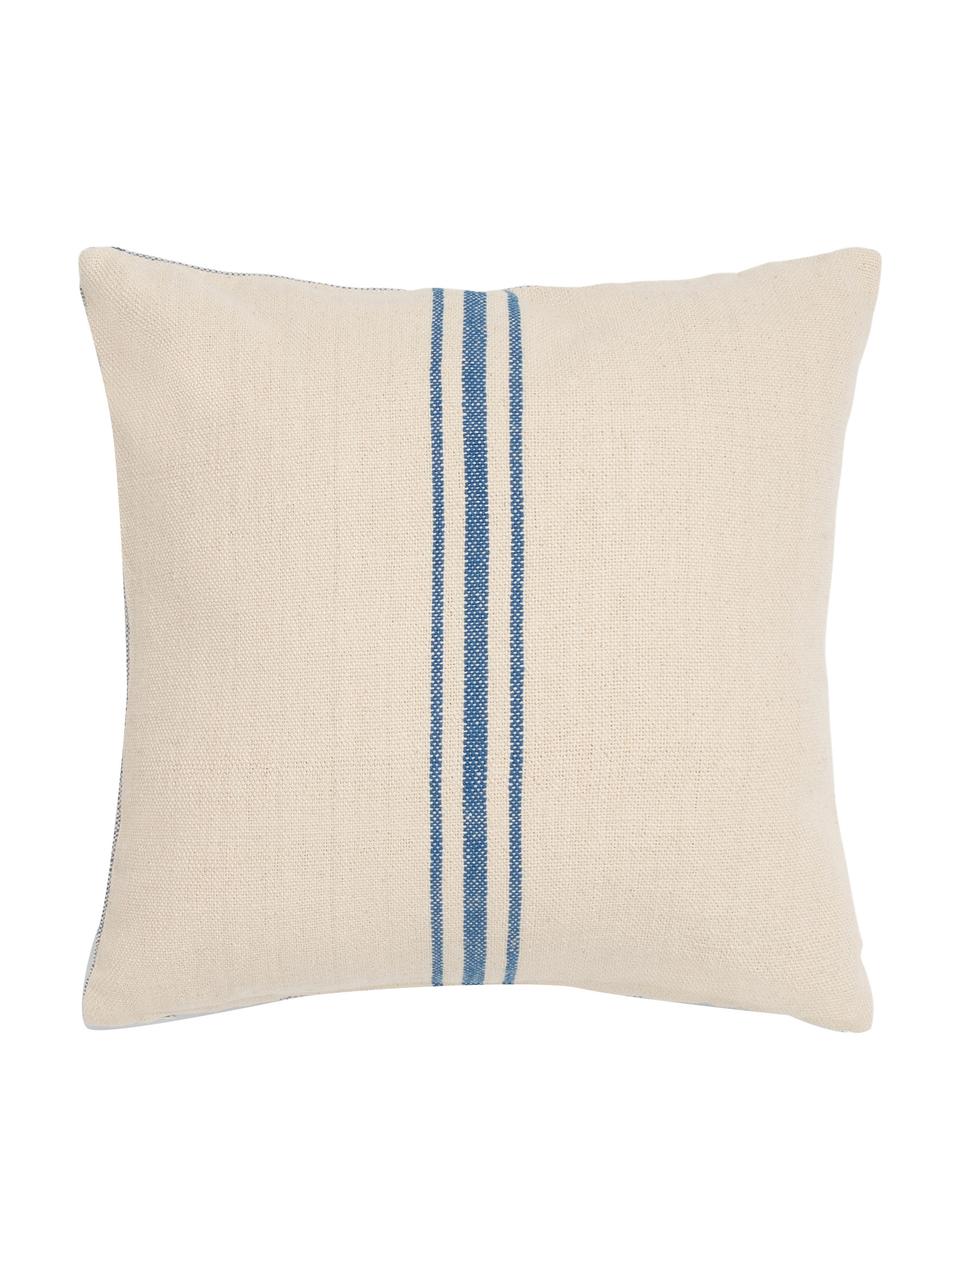 Poszewka na poduszkę Capri, 100% bawełna, Odcienie kremowego, niebieski, S 45 x D 45 cm